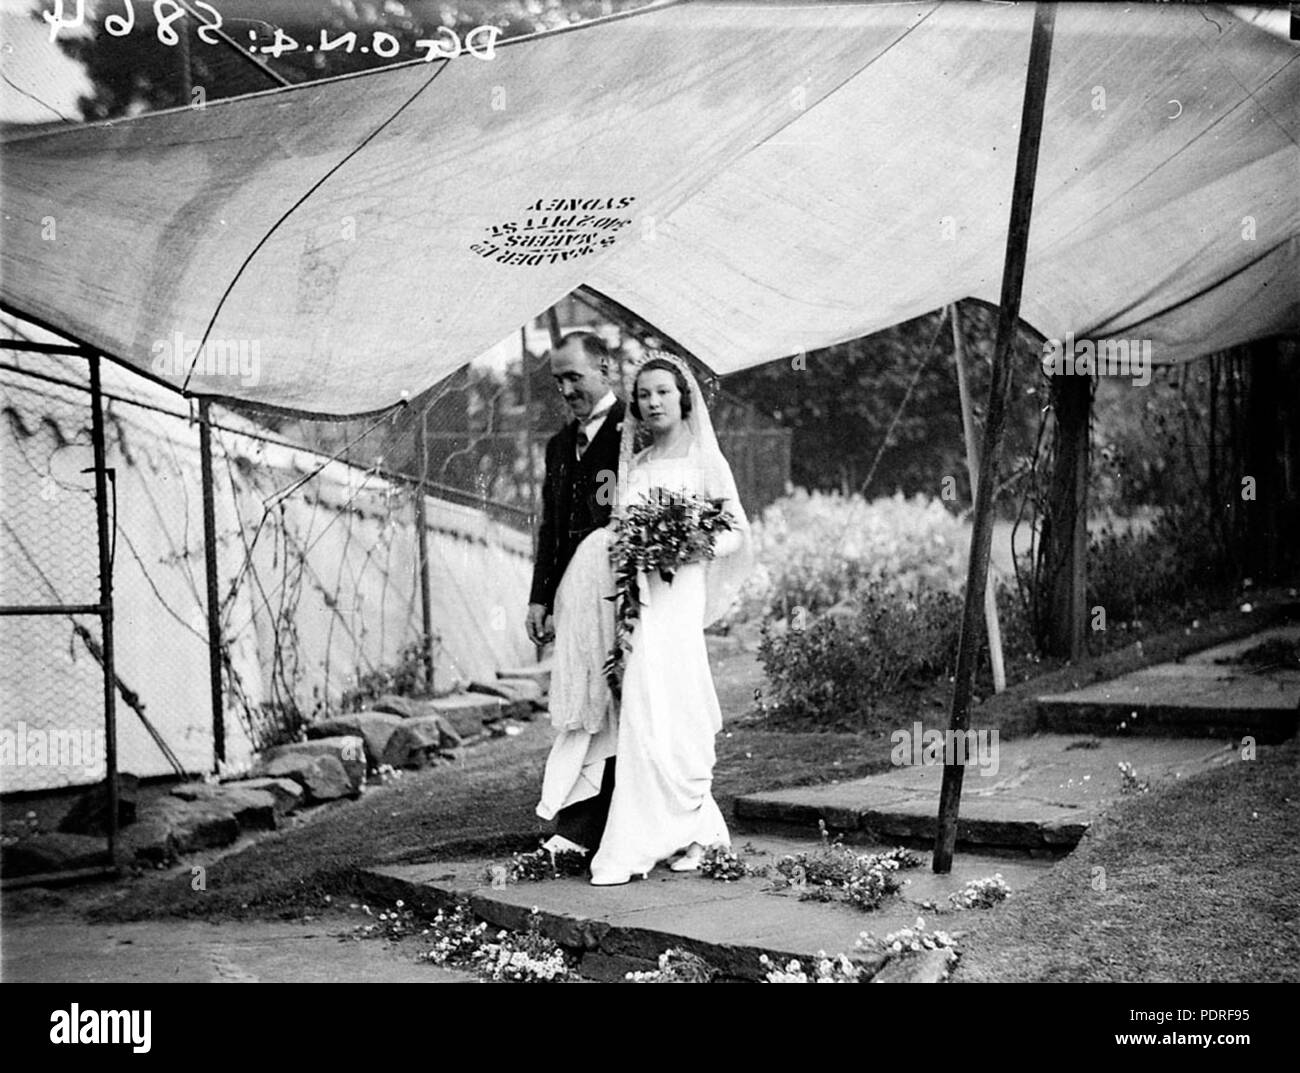 131 SLNSW 10206 Paar Ankunft am Festzelt unter Leinwand Schutz vor dem Regen WhitneyFriend Hochzeit Stockfoto